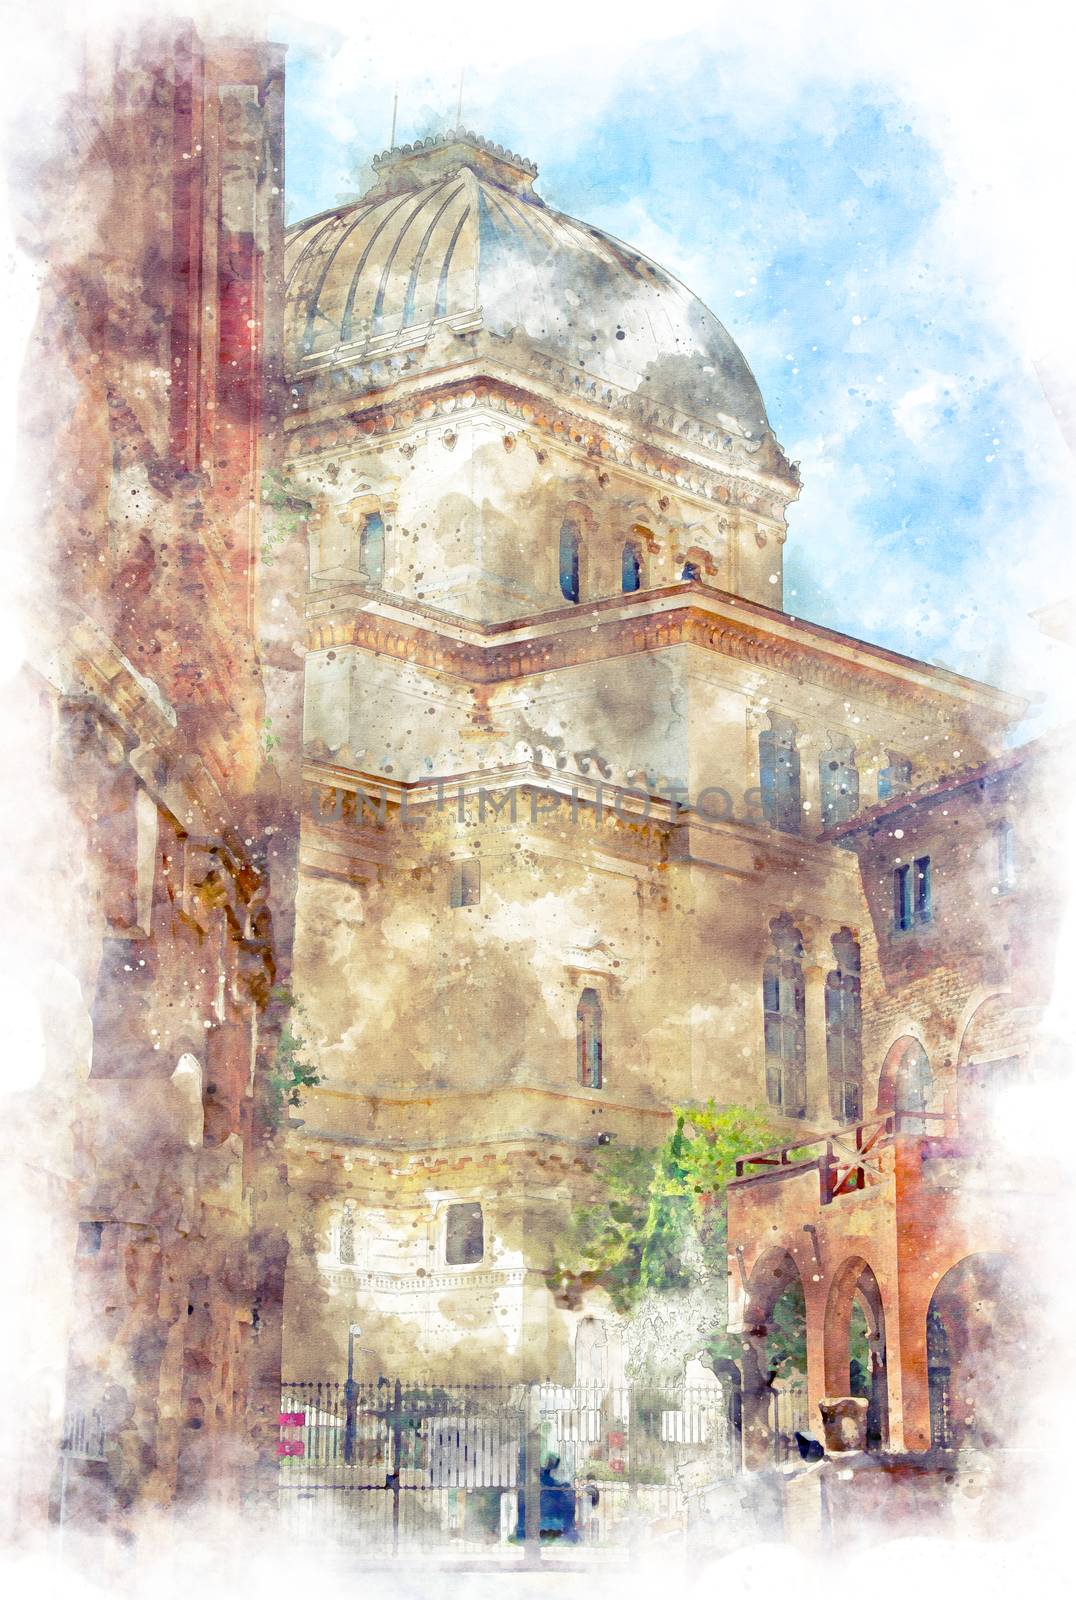 Digital illustration in watercolor style of Tempio Maggiore di Roma, view from Casina of Vallati, Rome, Italy